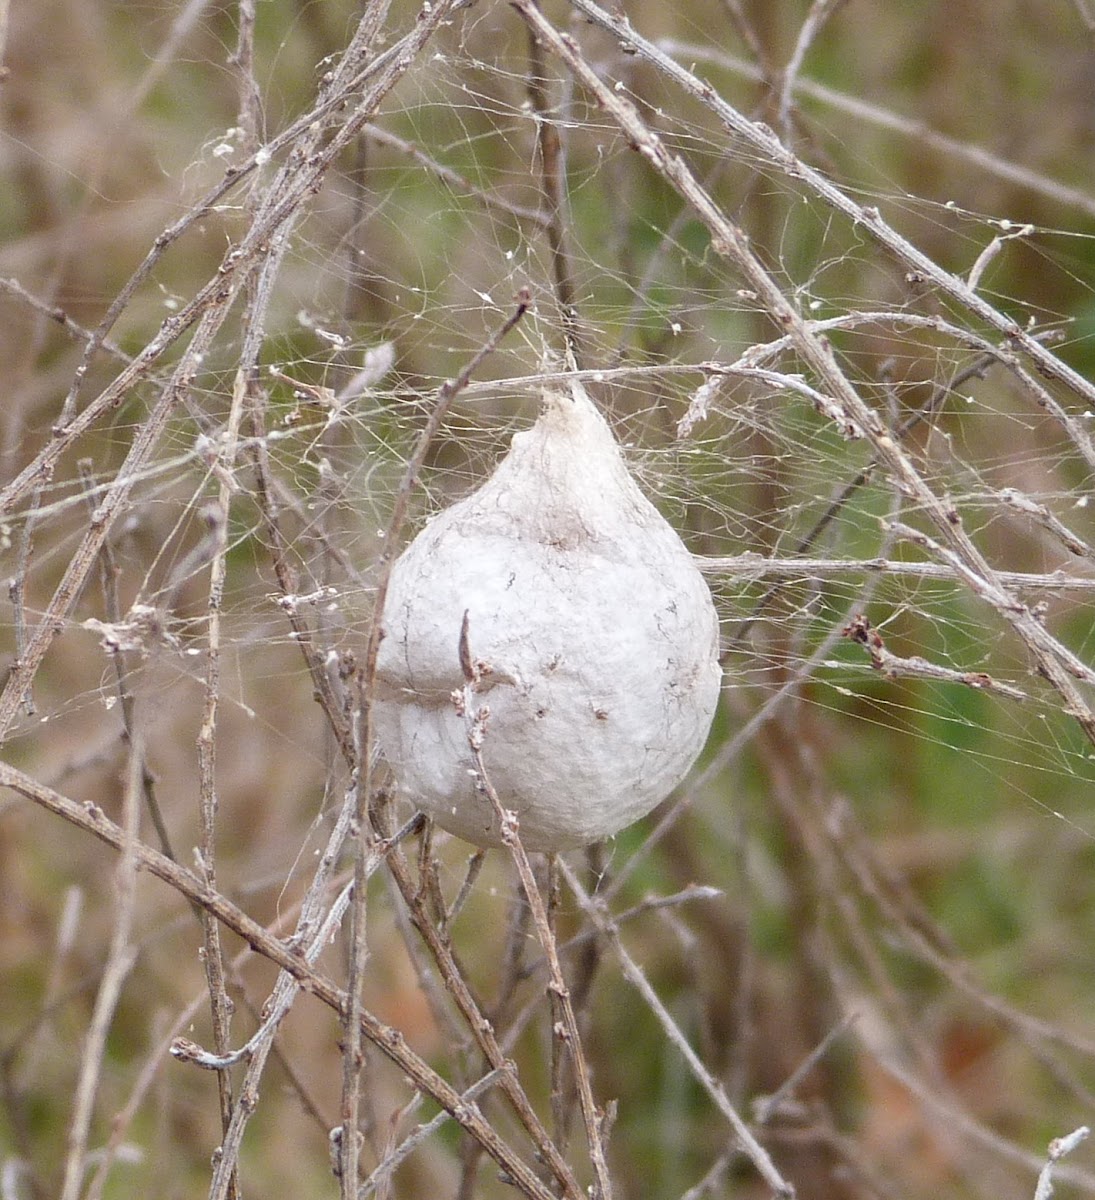 Nursery web spider egg sac